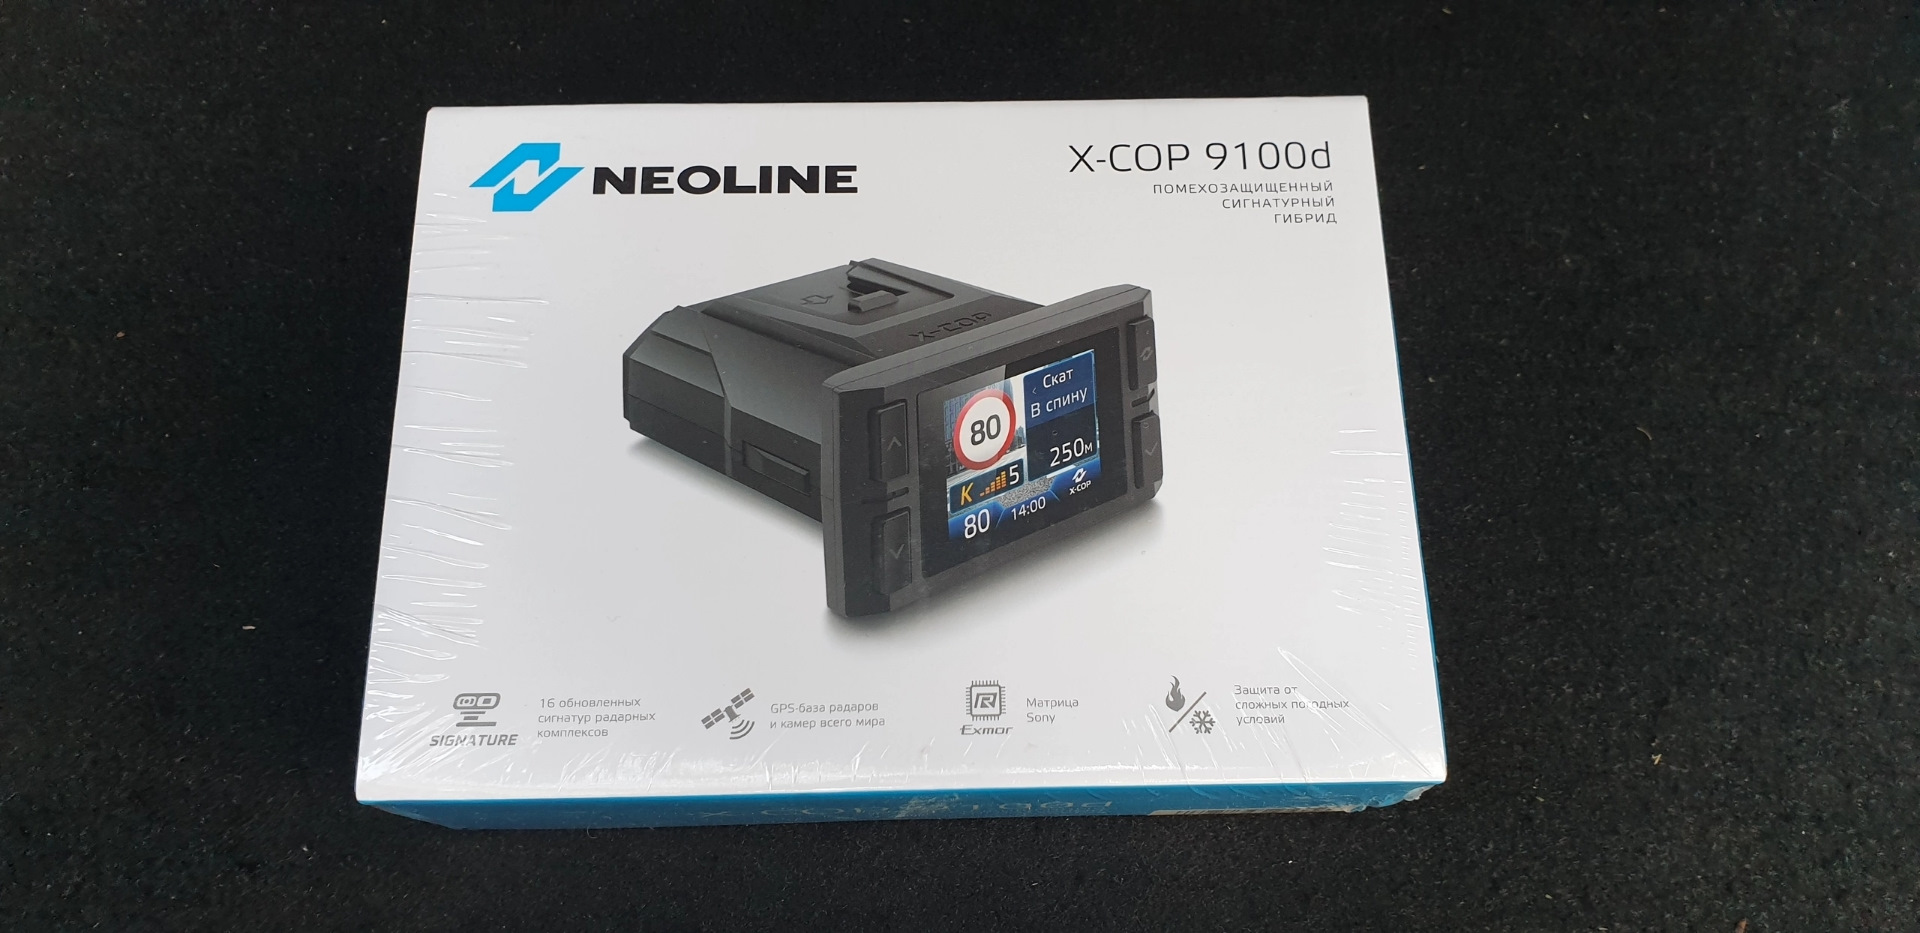 Neoline x-cop 9100d обзор. Neoline x-cop 9100s обновление базы радаров. X-cop 6000c. Где на коробке находится серийный номер устройства гибрила Neoline xcop 9100z.